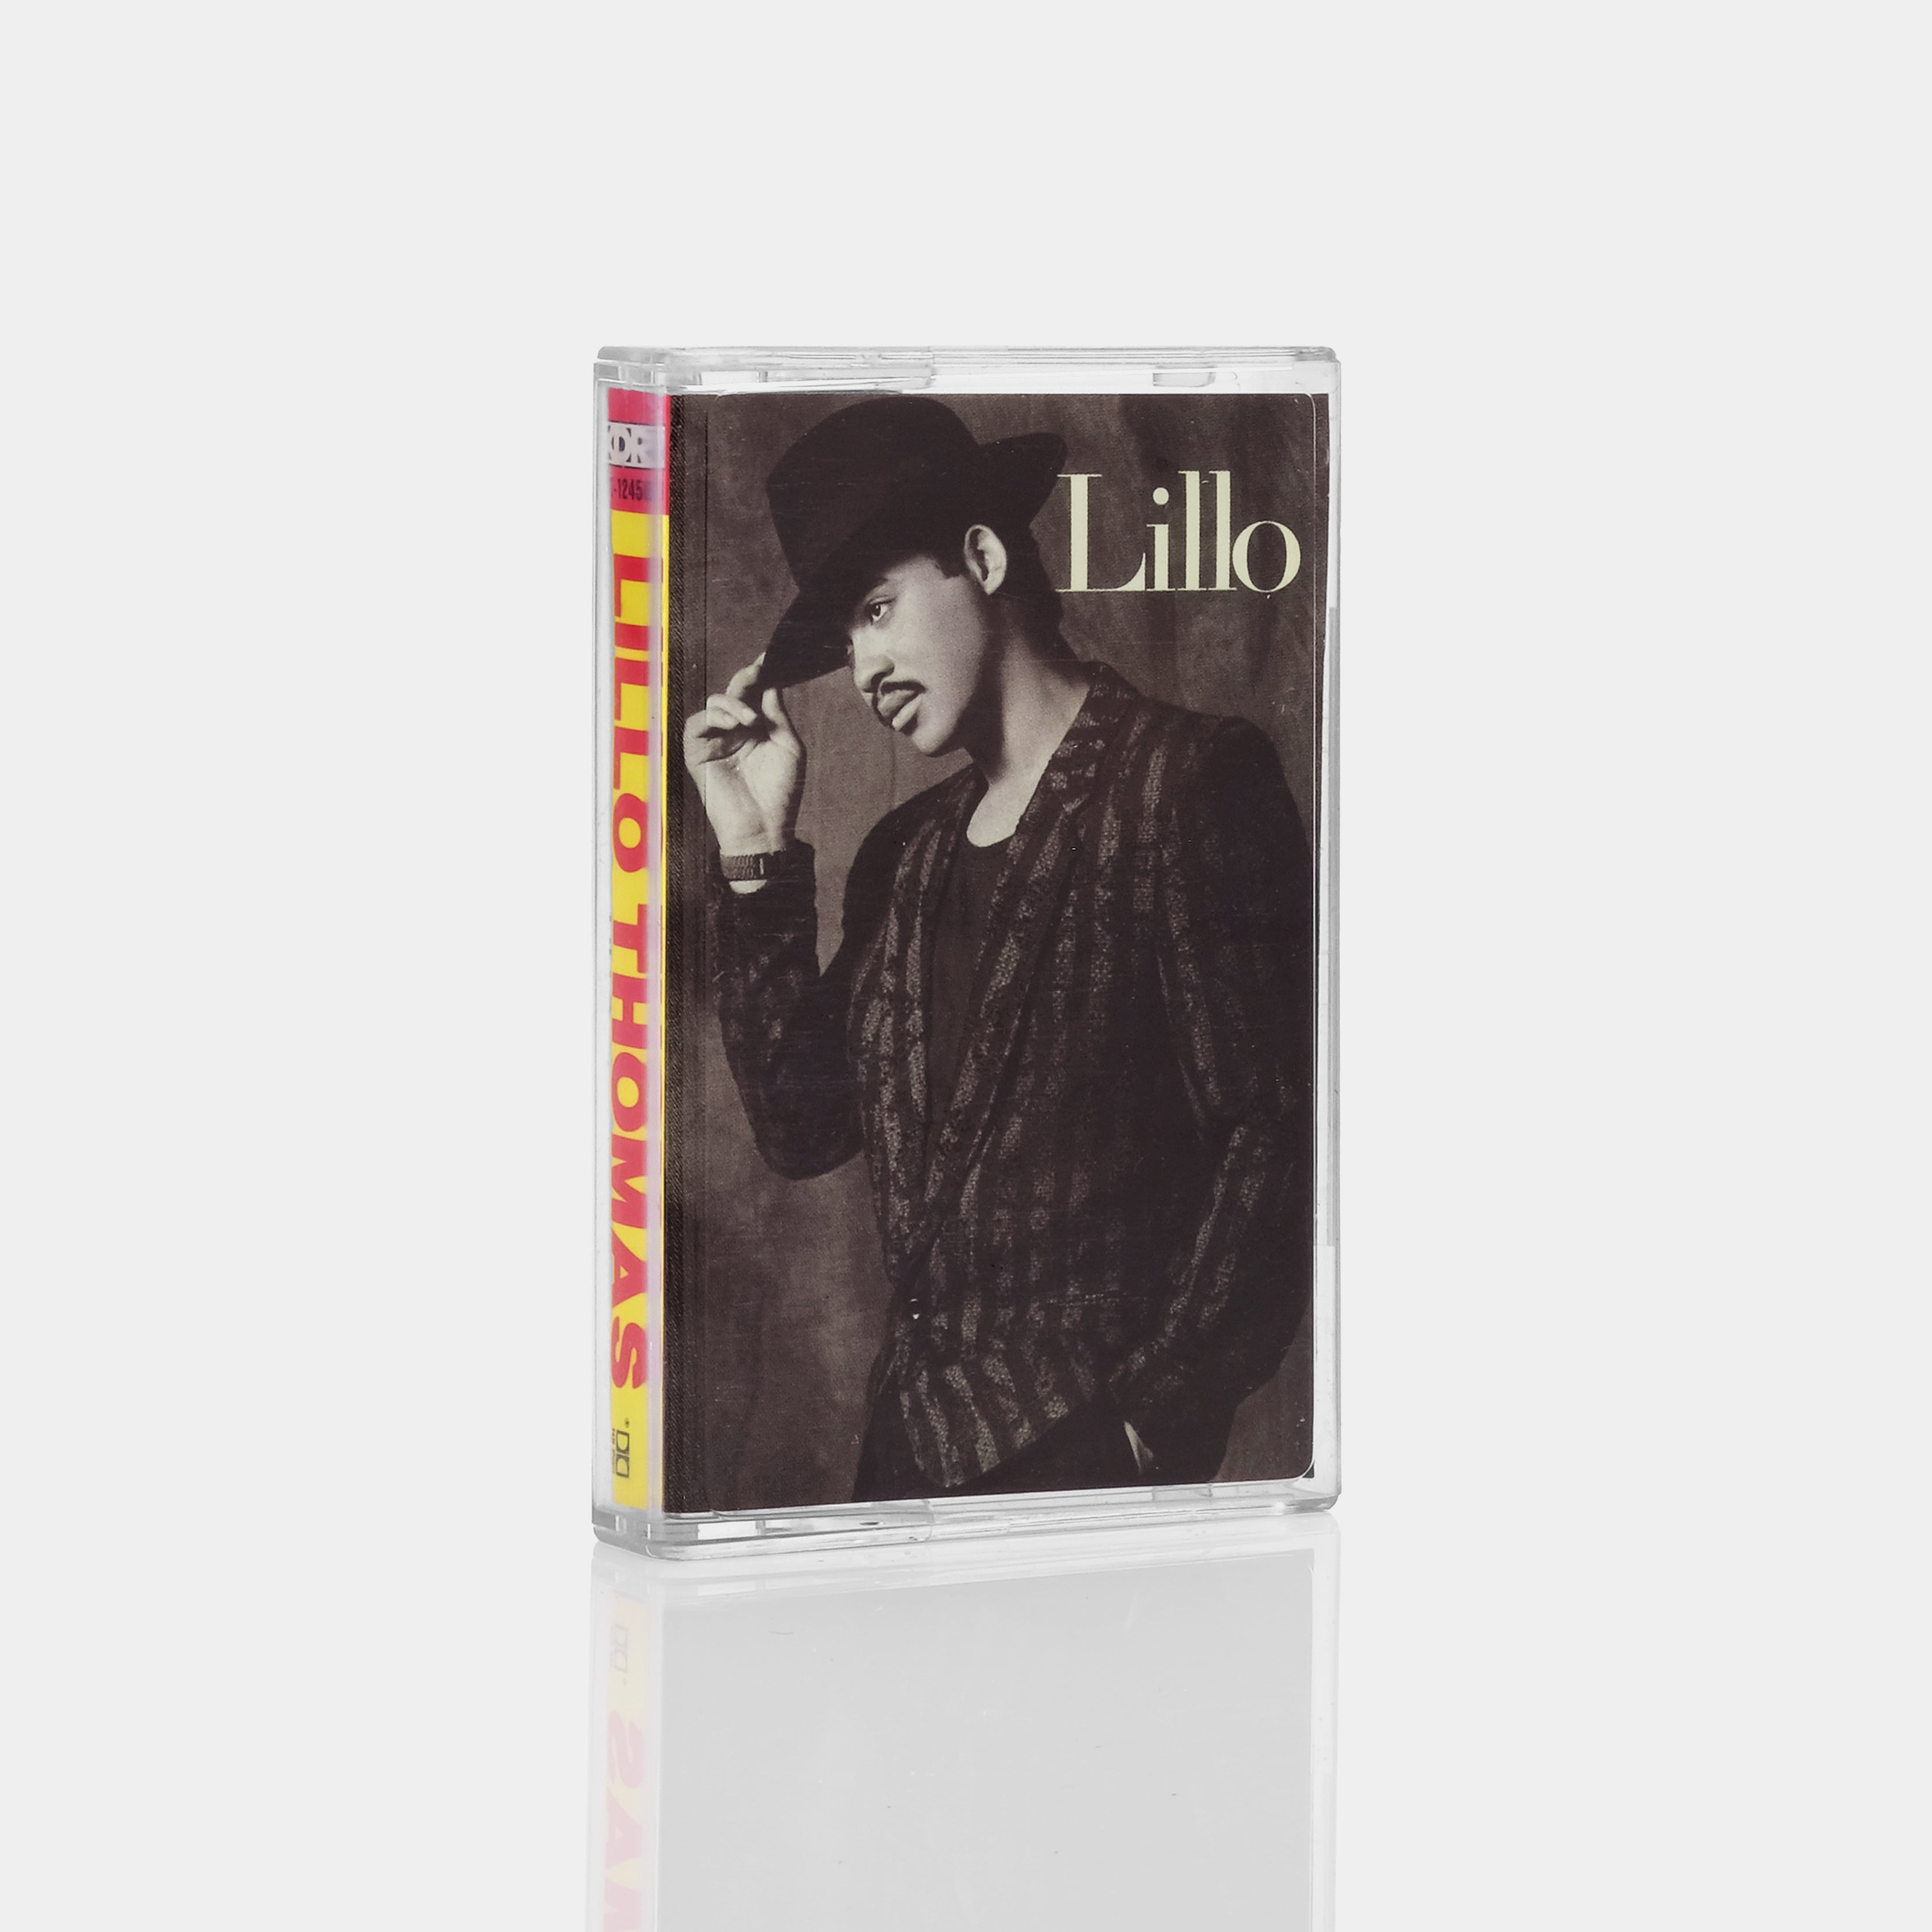 Lillo Thomas - Lillo Cassette Tape